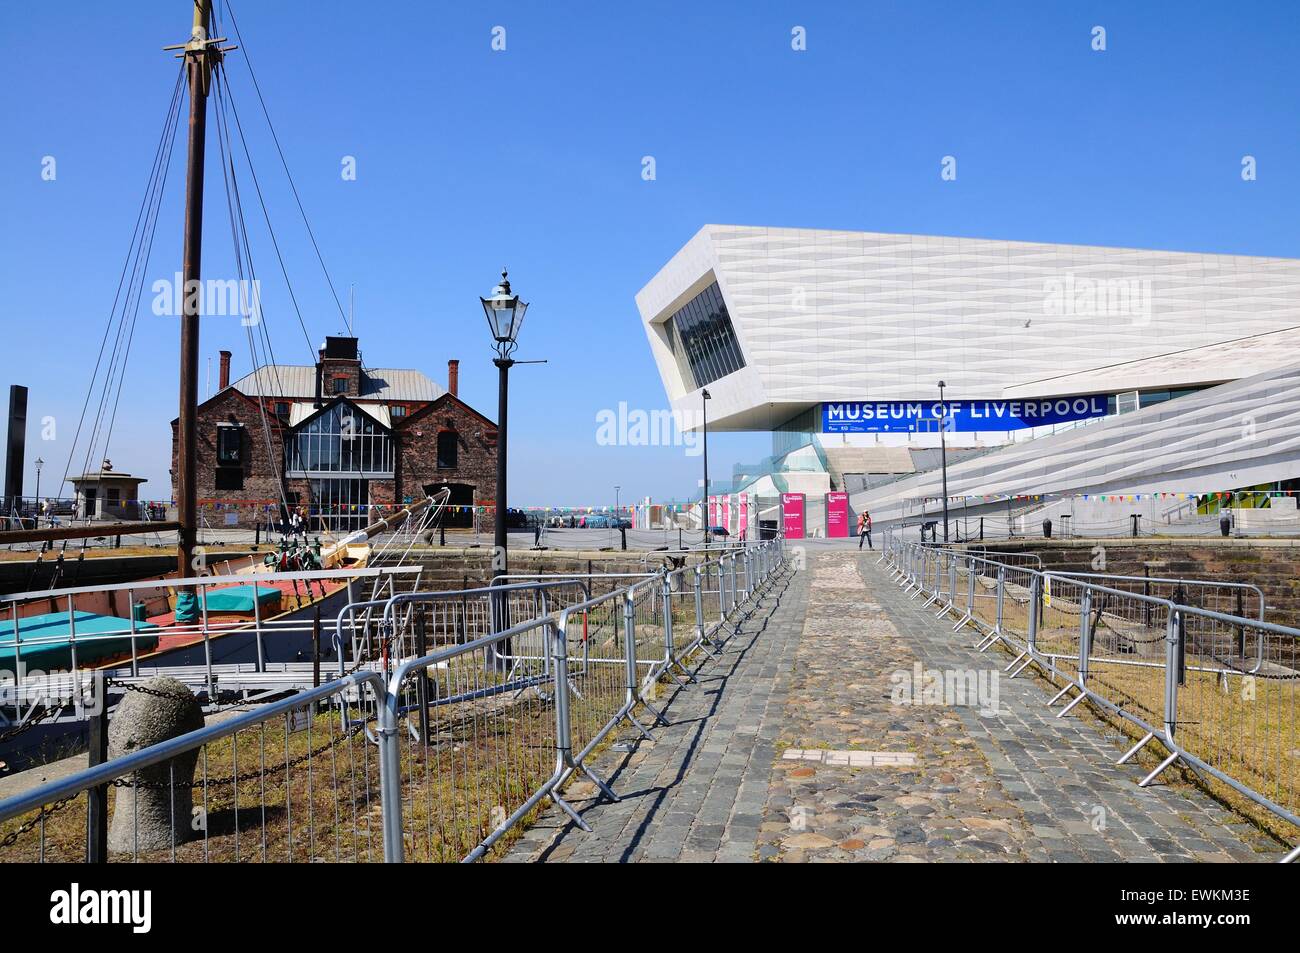 Voir le long d'une allée vers le Musée de Liverpool building à Pier Head, Liverpool, Merseyside, England, UK, Europe de l'Ouest. Banque D'Images